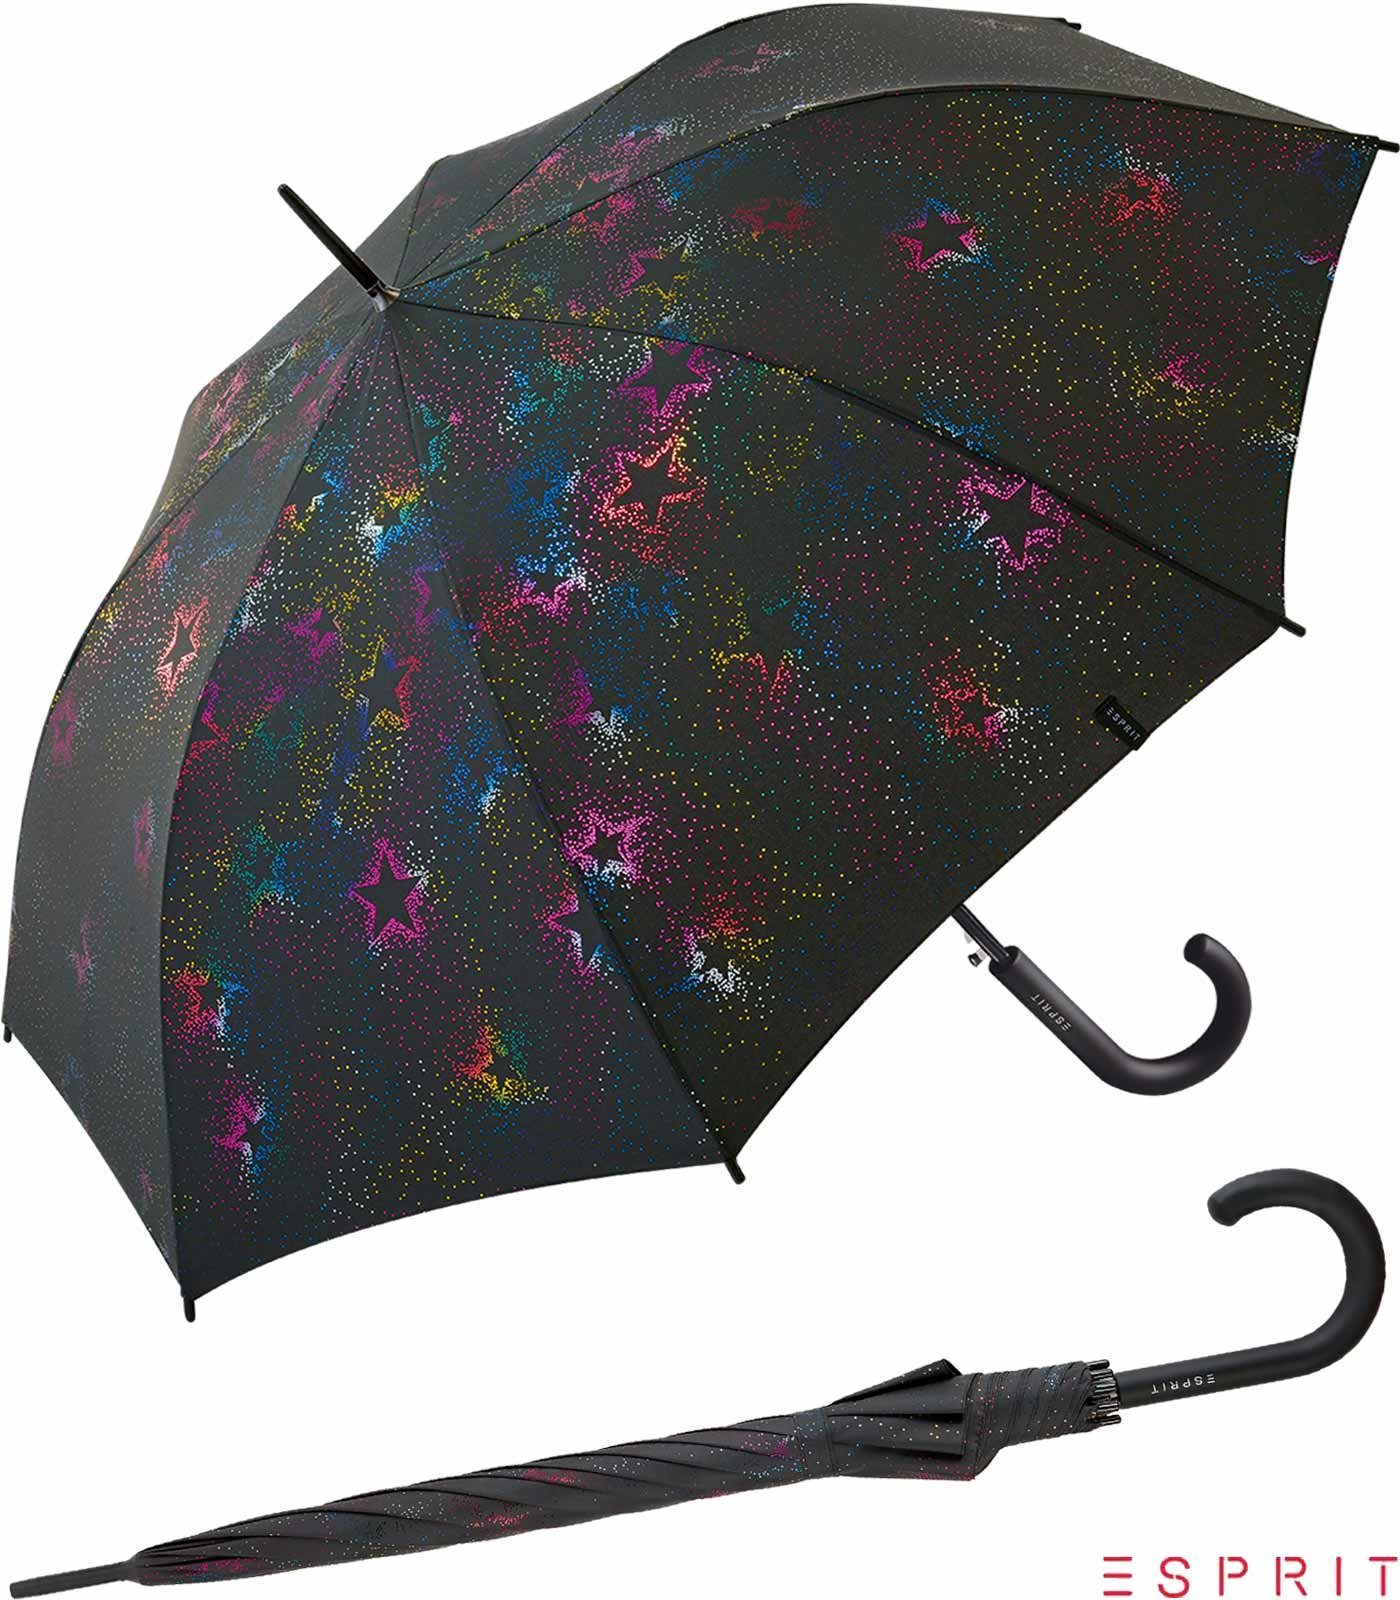 Esprit Langregenschirm Damen Auf-Automatik - Starburst - multimetallic, groß, stabil, mit verspieltem Sternenmuster